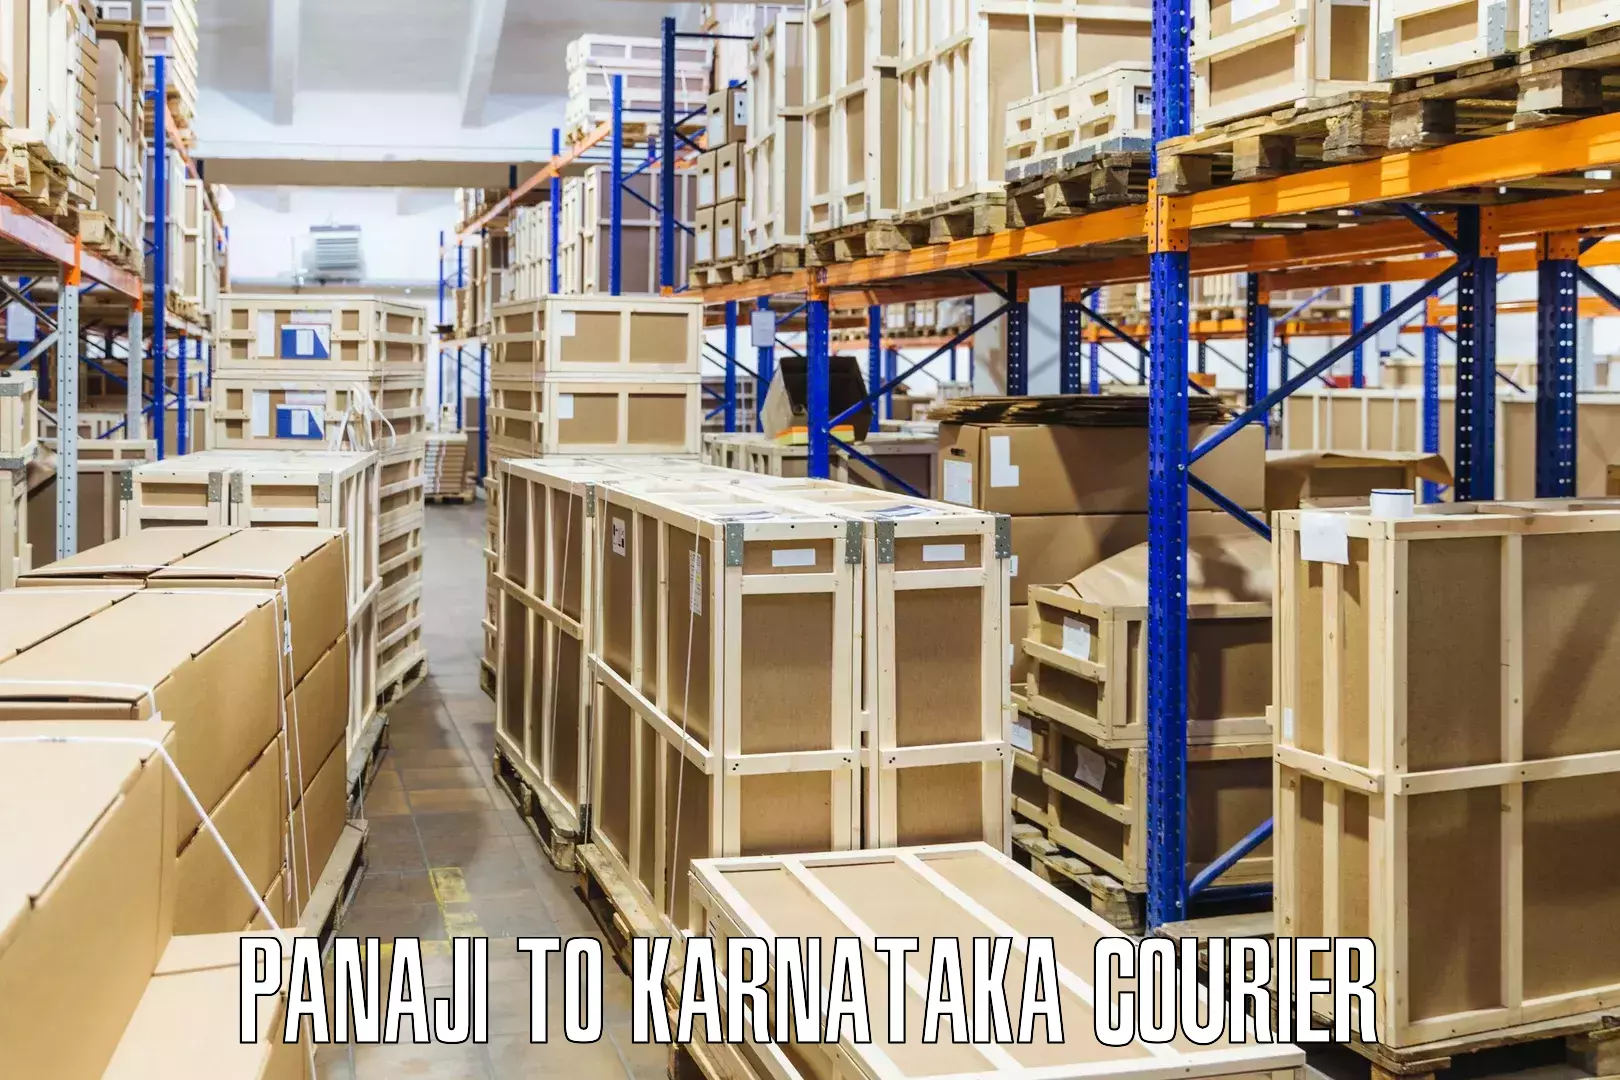 Courier insurance Panaji to Karnataka